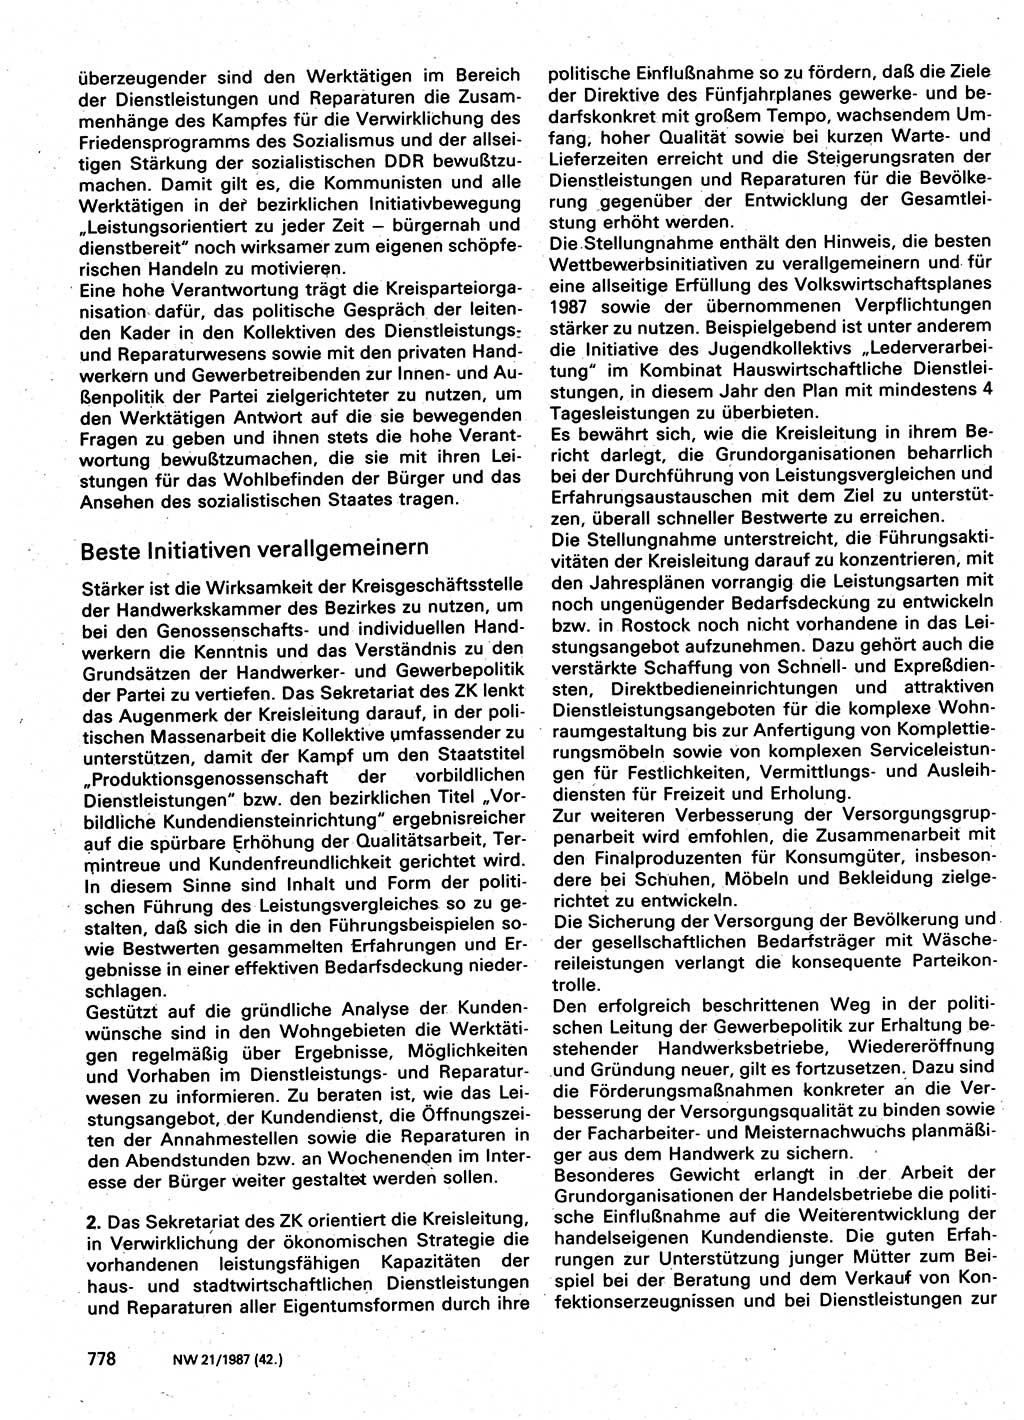 Neuer Weg (NW), Organ des Zentralkomitees (ZK) der SED (Sozialistische Einheitspartei Deutschlands) für Fragen des Parteilebens, 42. Jahrgang [Deutsche Demokratische Republik (DDR)] 1987, Seite 778 (NW ZK SED DDR 1987, S. 778)